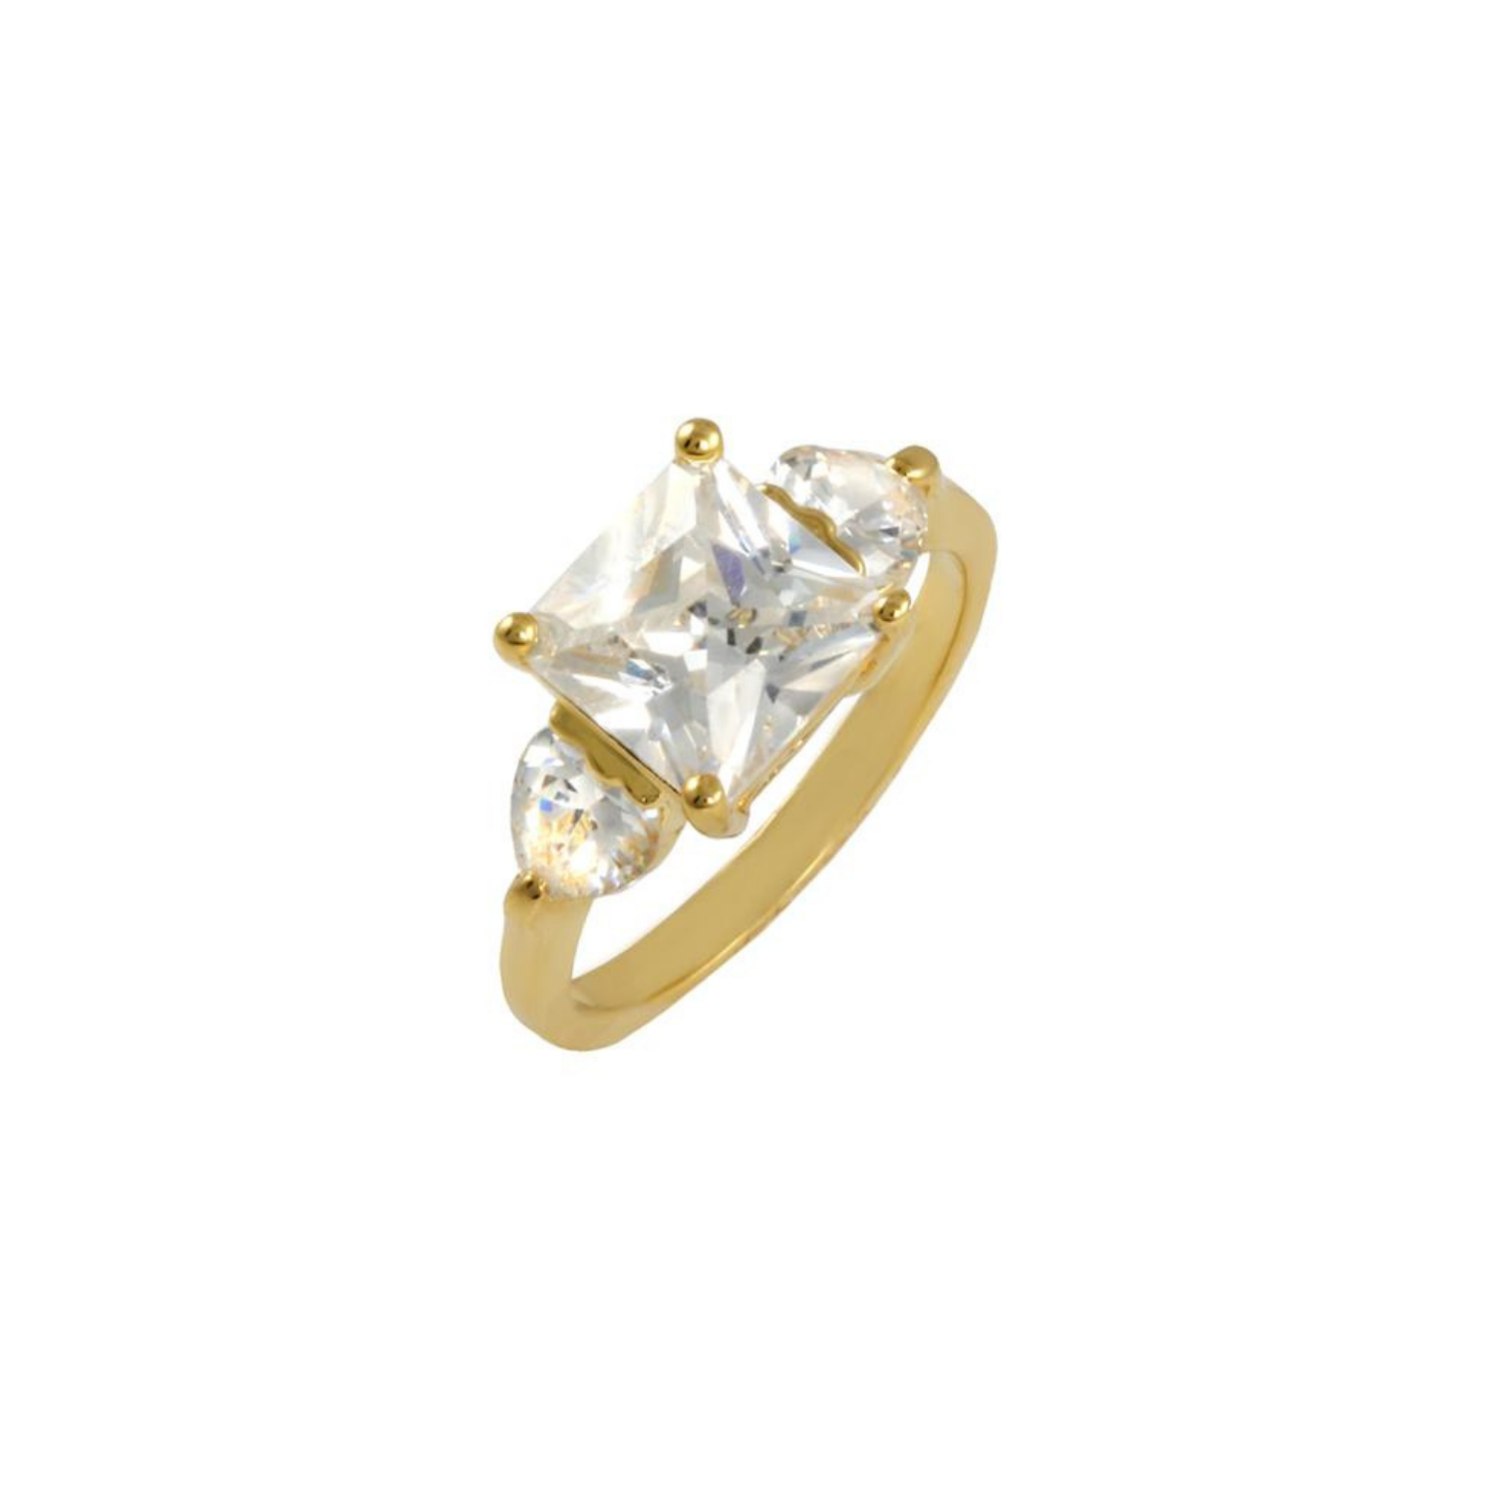 Ayla 3 Ct. Princess Cut CZ Diamond Ring, Gold - Zahra Jewelry